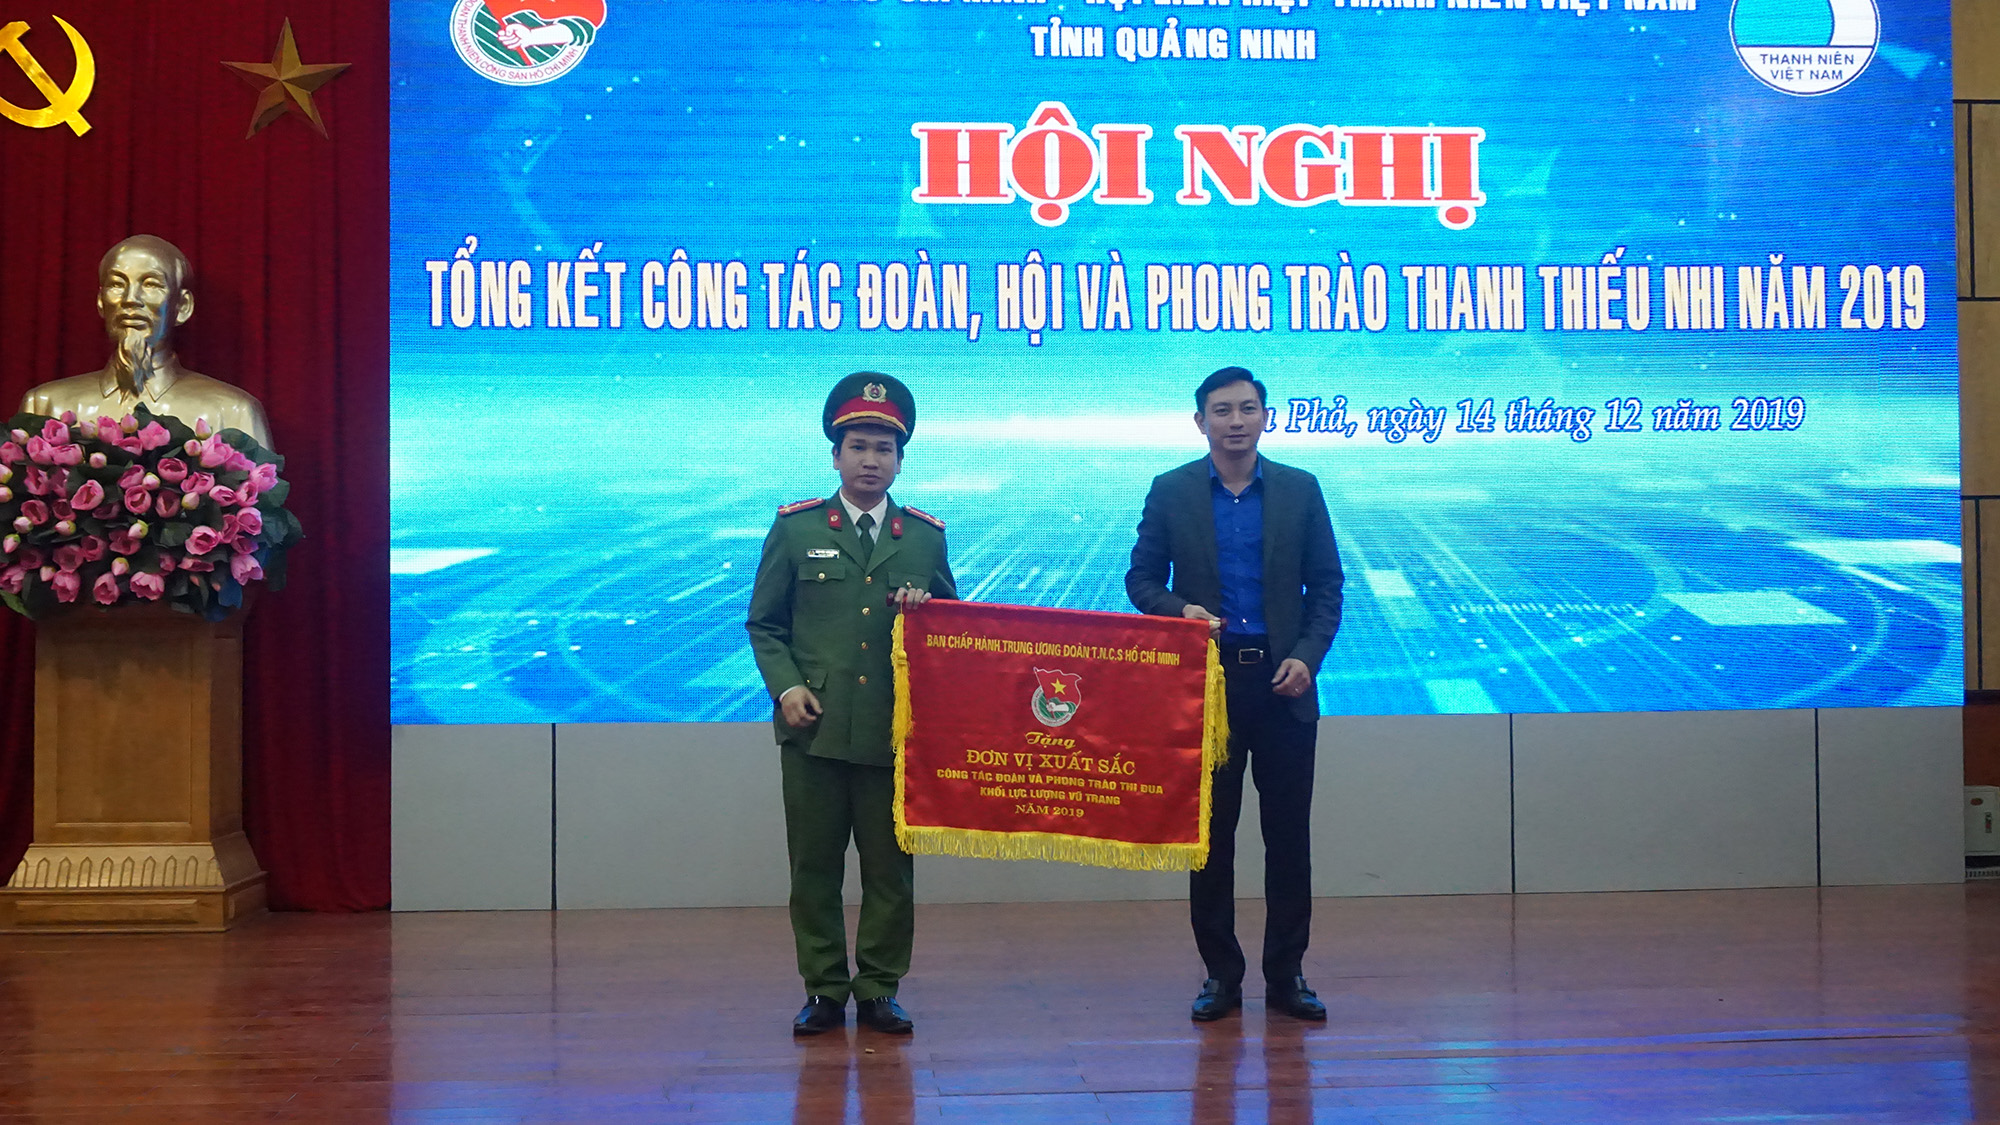 Đoàn Phòng Cảnh sát điều tra tội phạm ma túy, Công an tỉnh được Trung ương Đoàn tặng cờ đơn vị xuất sắc công tác đoàn và phong trào thi đua khối lực lượng vũ trang.